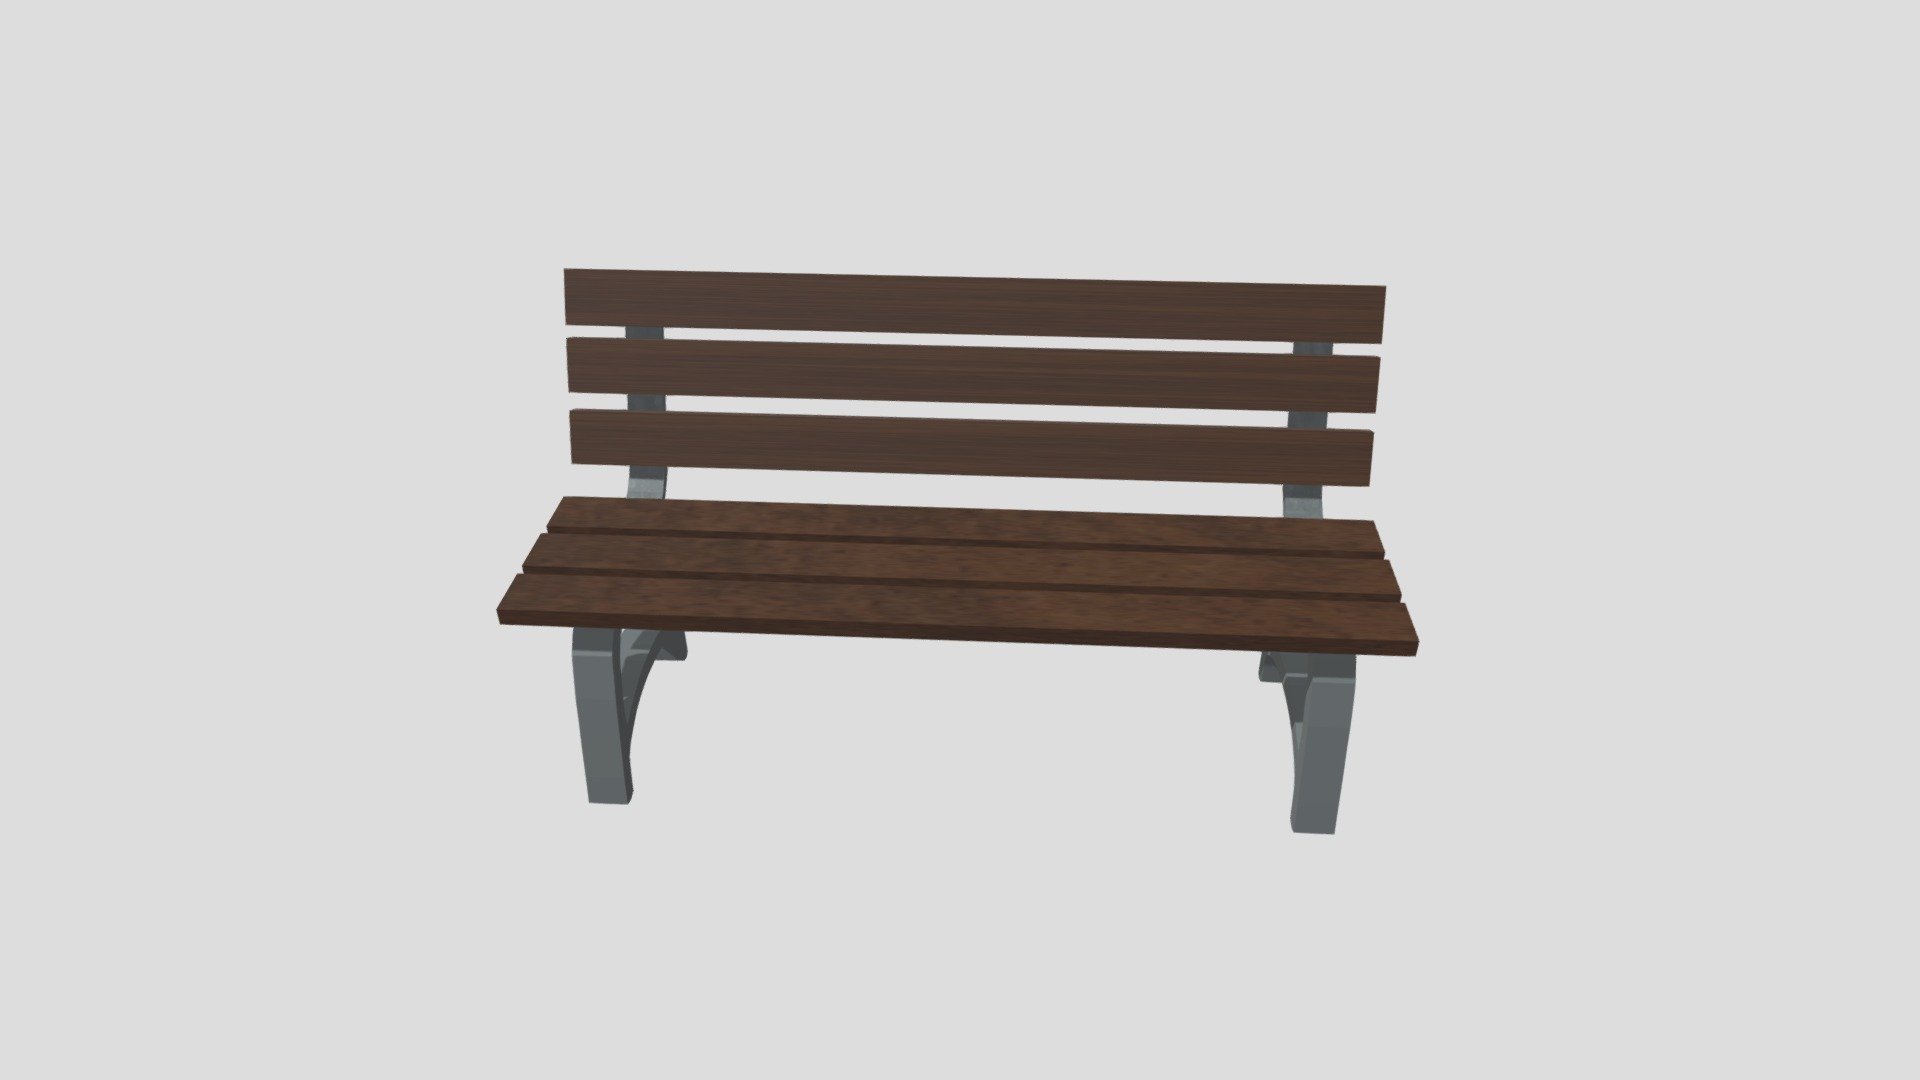 Game Asset (obj, glft)
Wooden Seat Slats
Metal Frame - Park Bench - 3D model by surejungle23247 (@omearaanthony0) 3d model